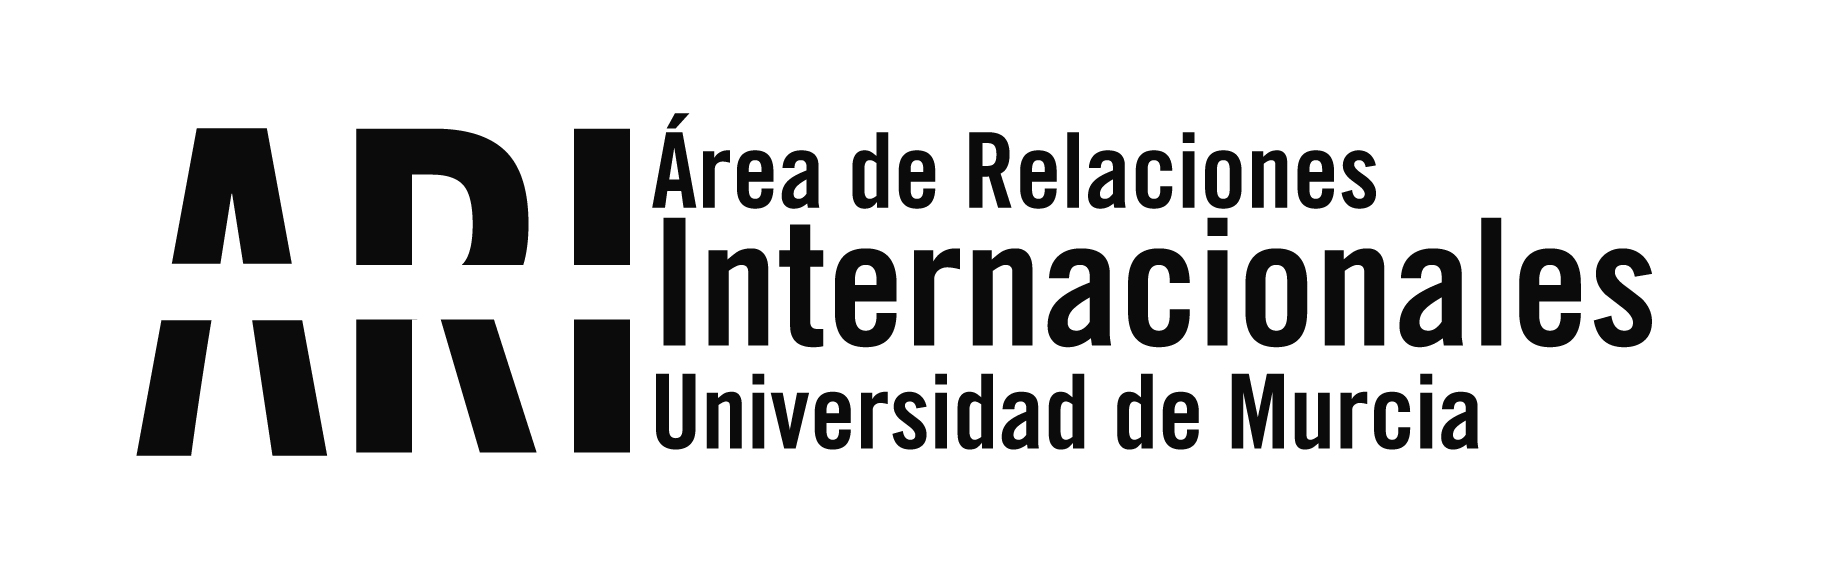 Cifras Internacionalización 2012 - Área de Relaciones Internacionales